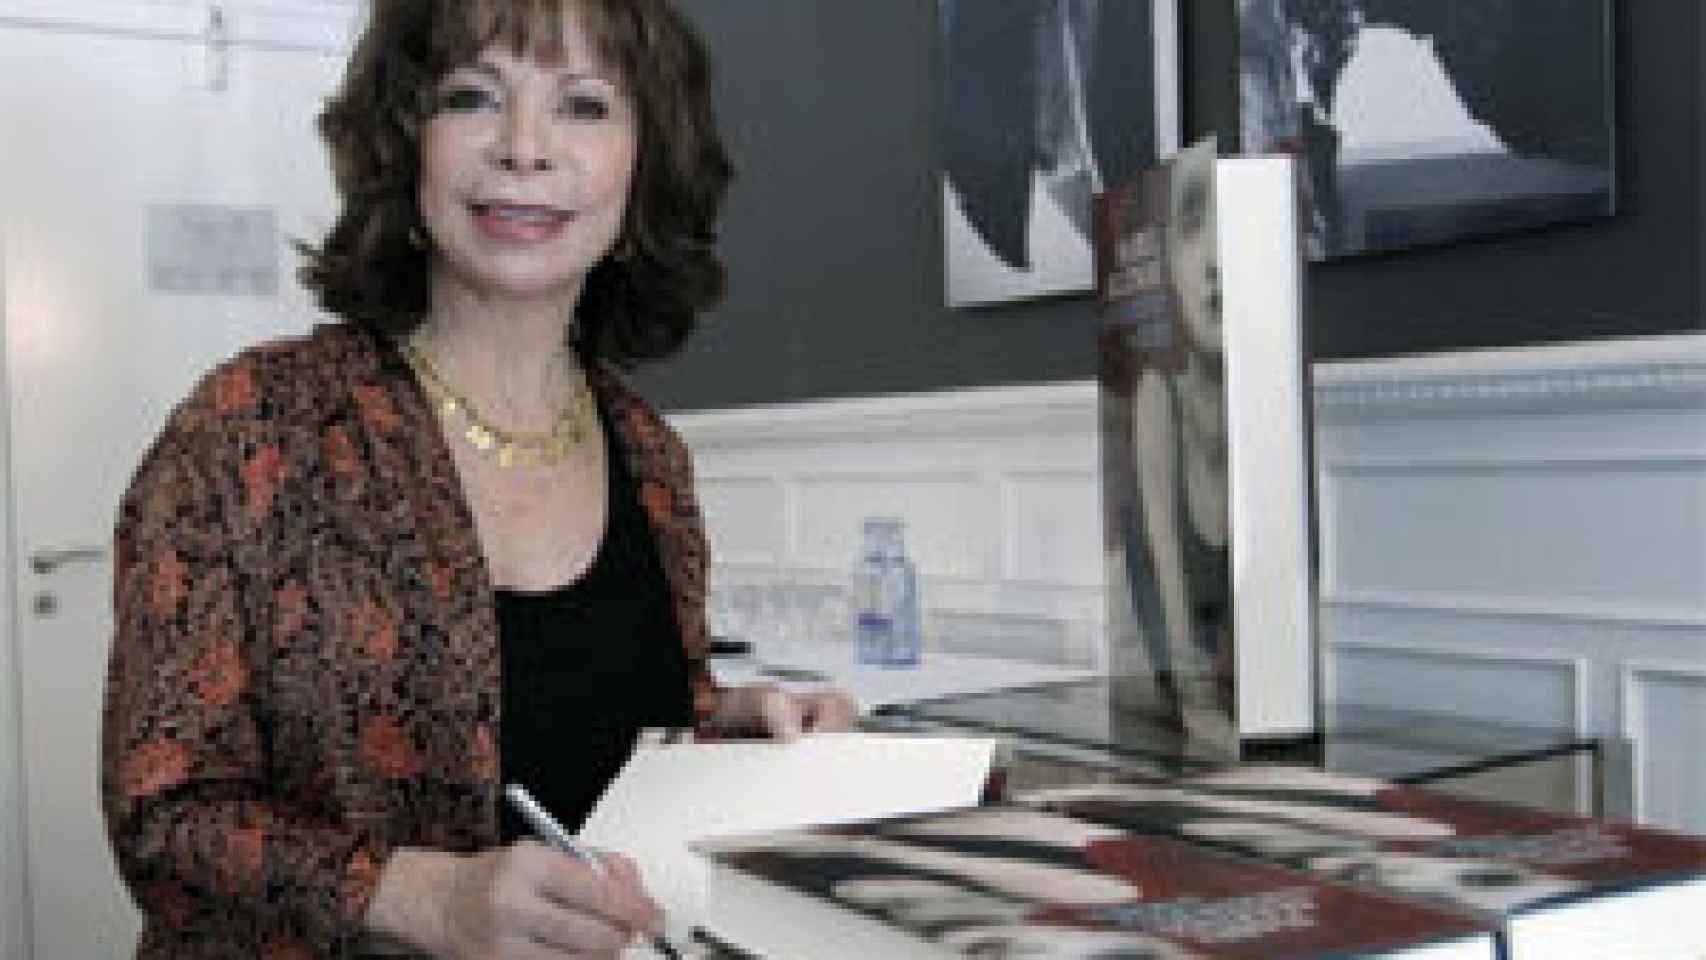 Image: Isabel Allende: Si hoy fuera joven, estaría orgullosa protestando en la calle